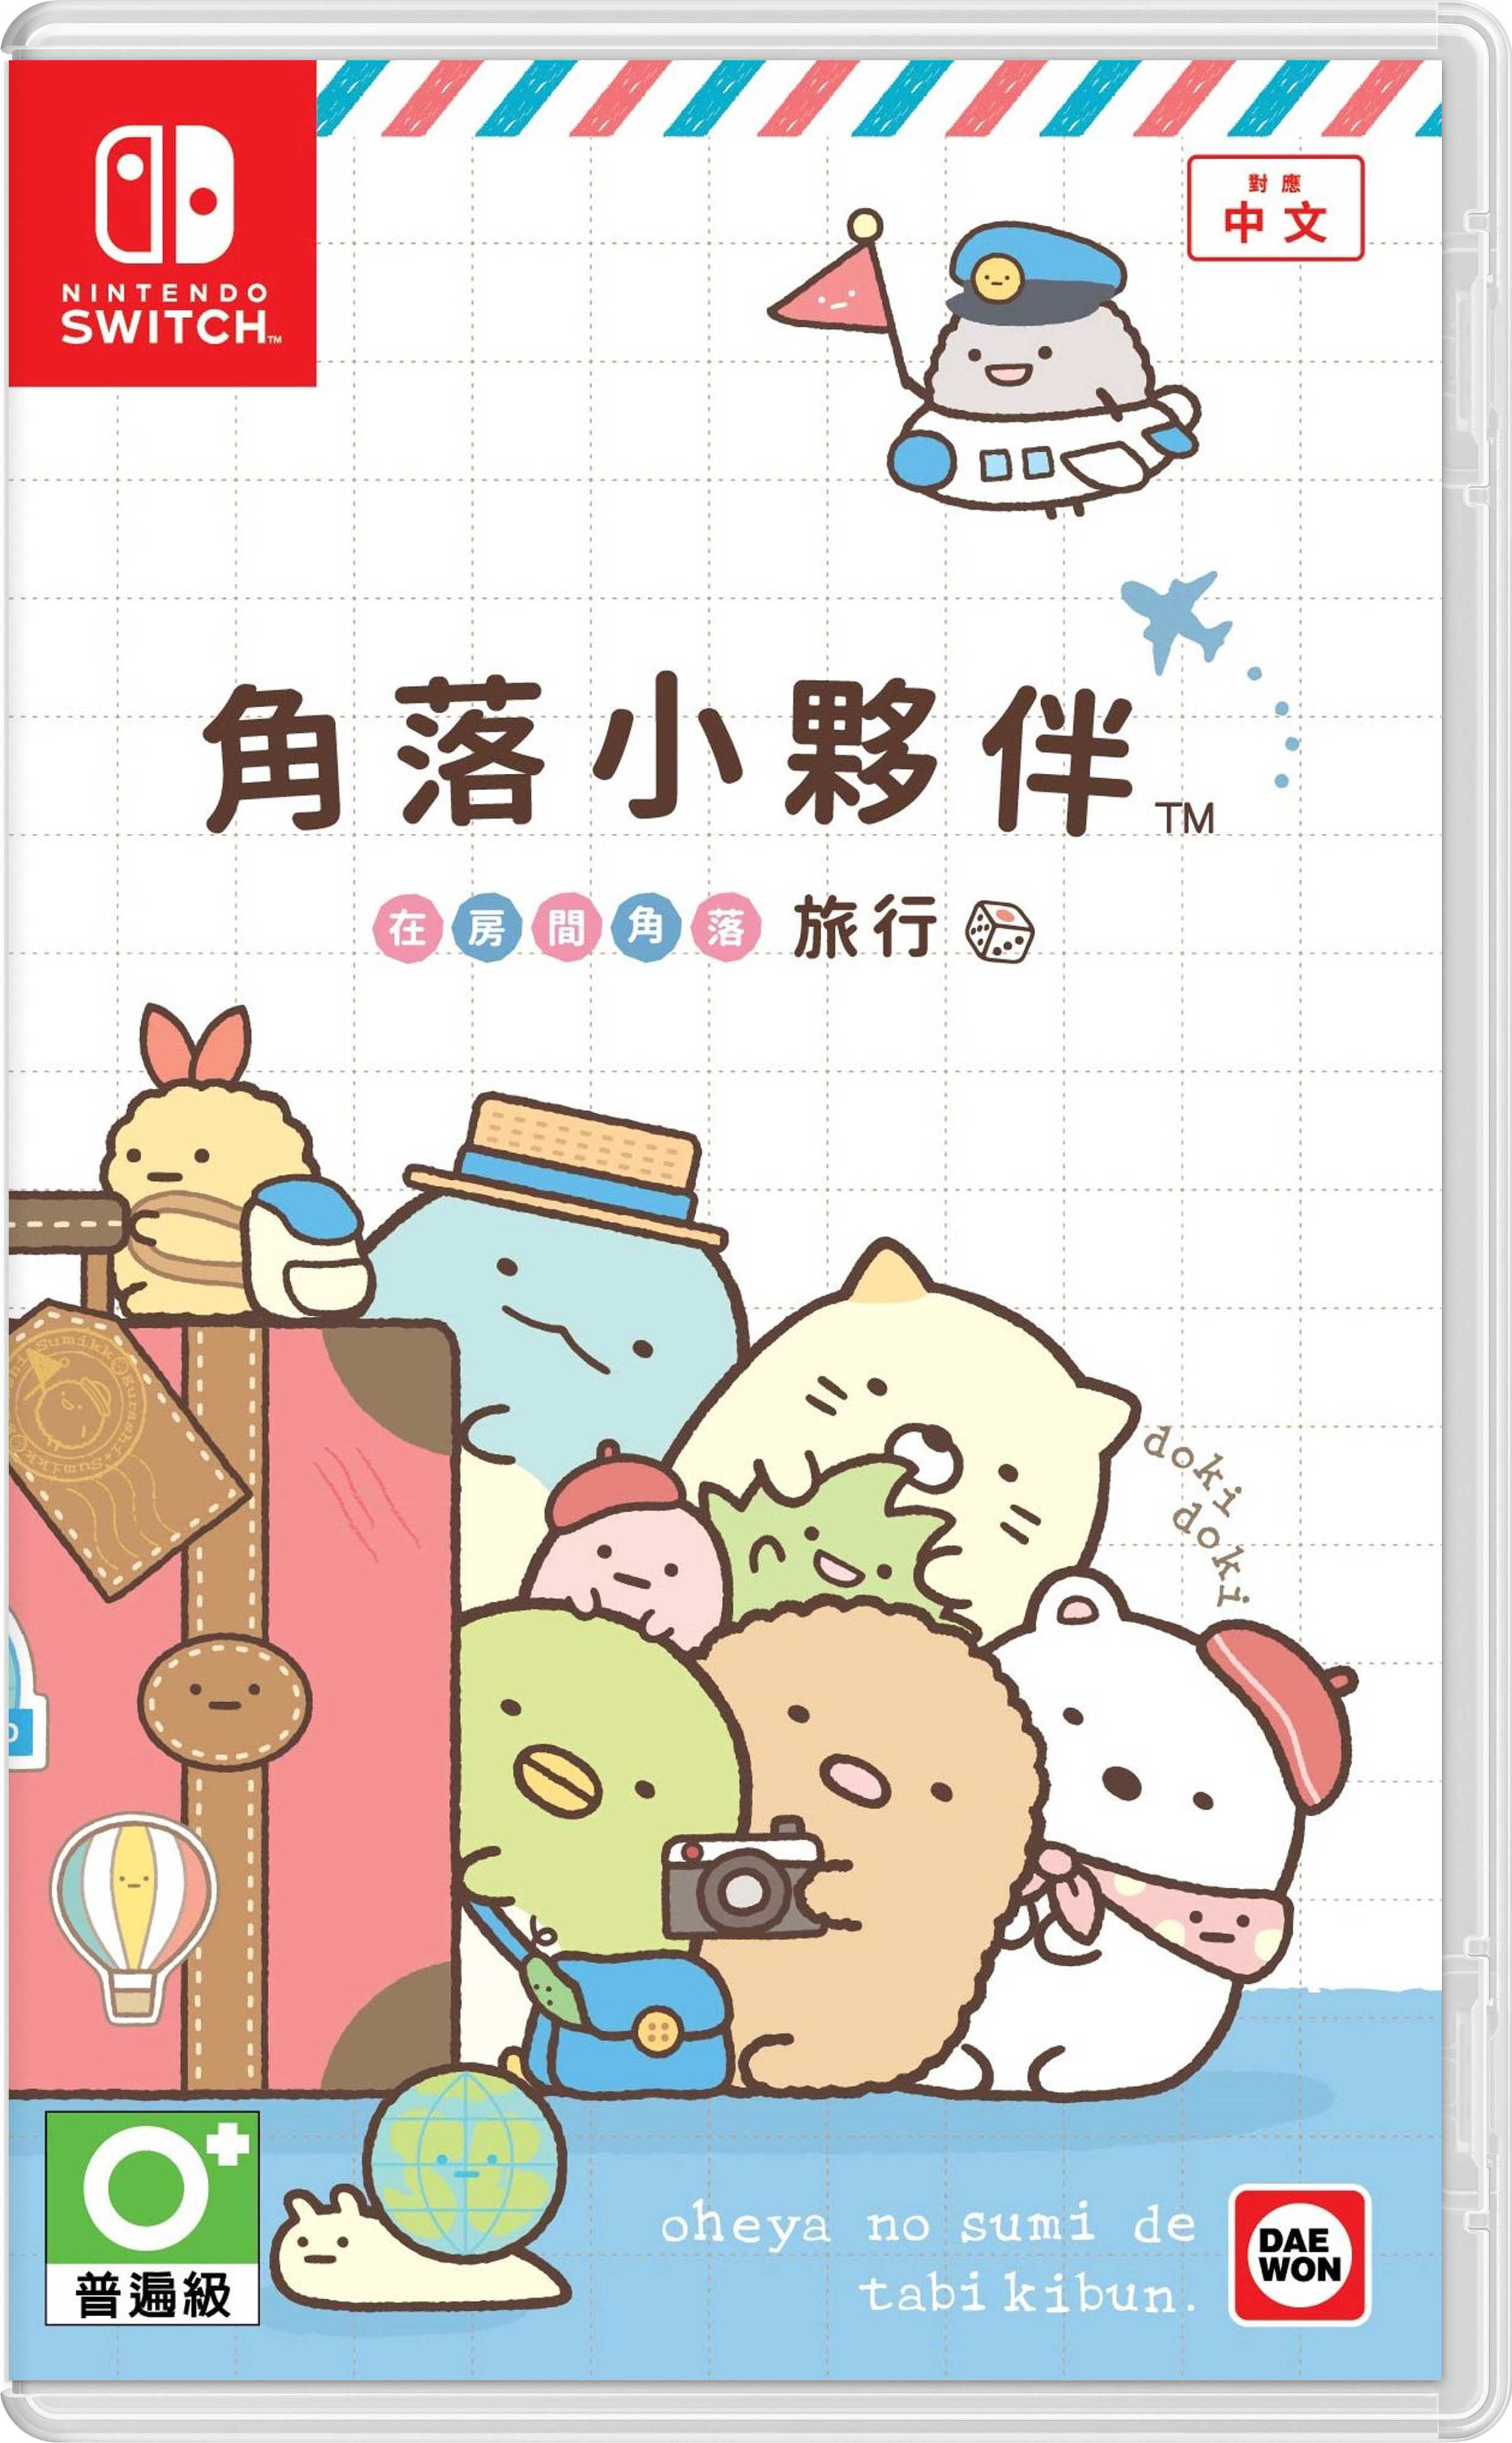 【主機遊戲】派對遊戲《角落萌寵在房間角落旅行》中文版發售確認-第1張